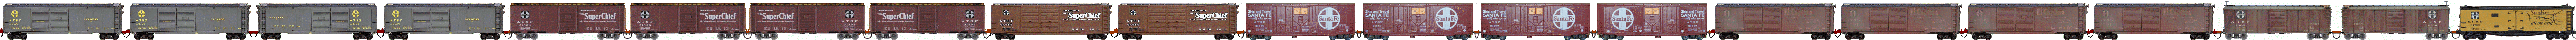 Convoi 21 wagons boxcar ATSF